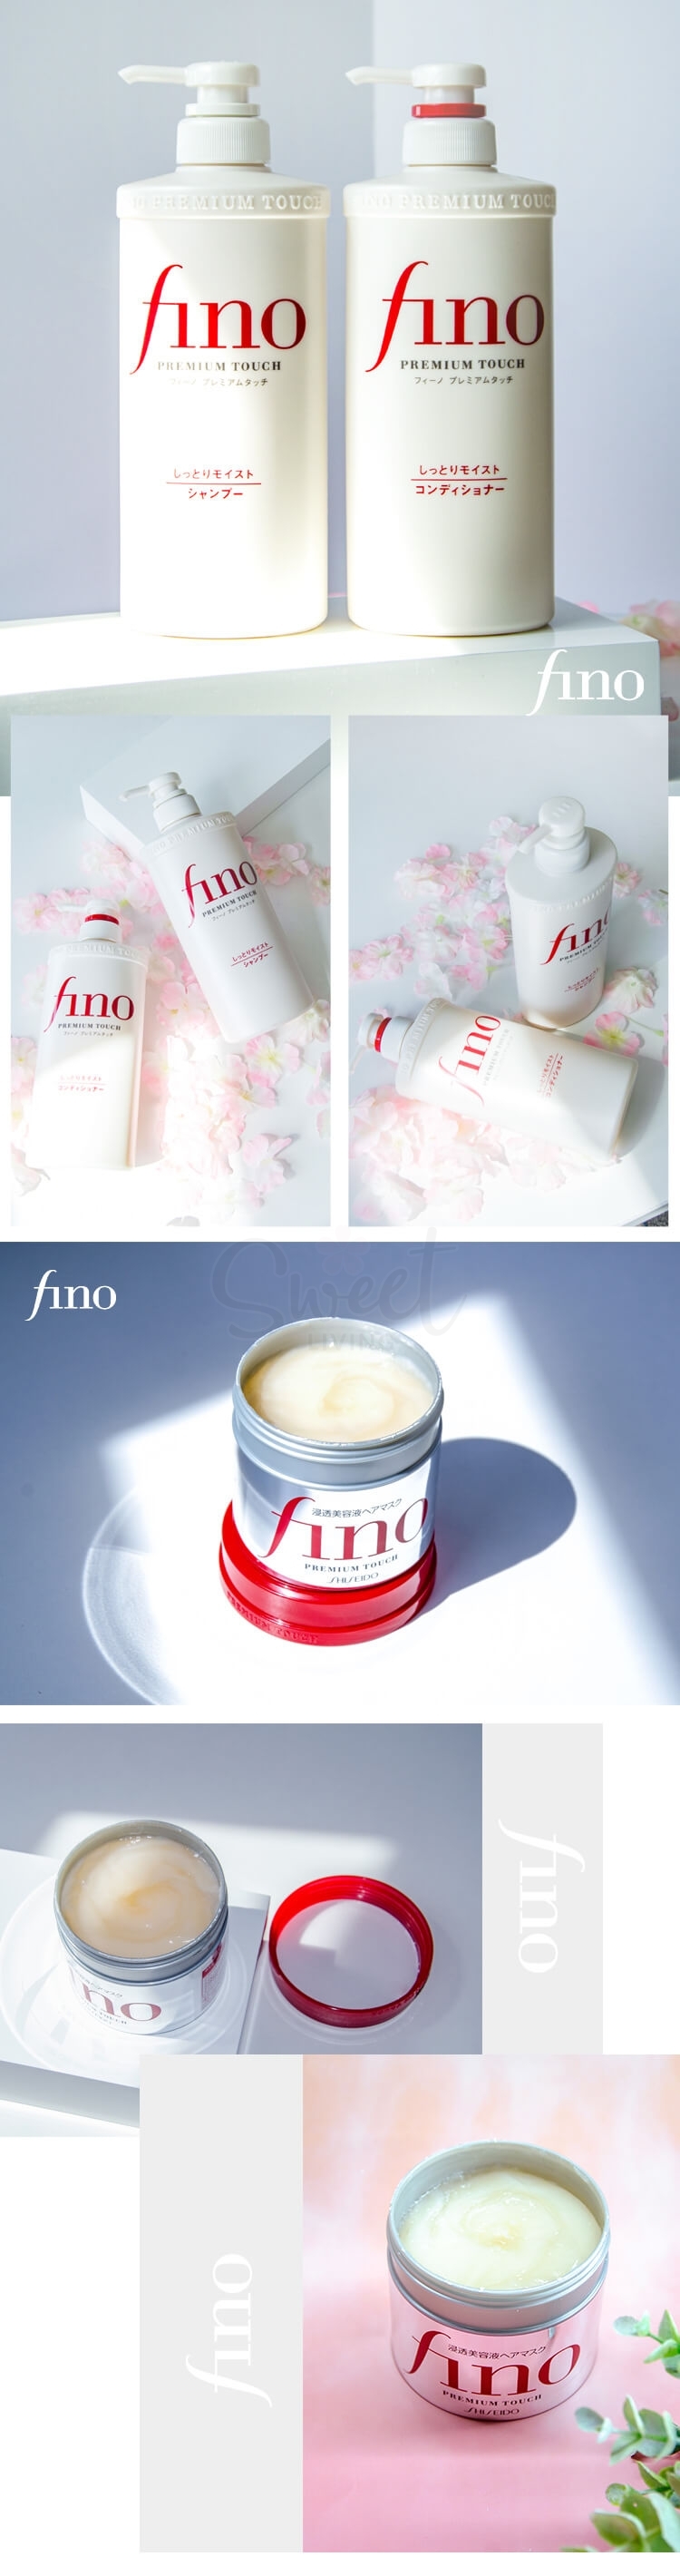 【日本 Shiseido】资生堂 FINO 美容复合精华洗发水护发素套装 550ml*2 染烫受损护理 -  - 6@ - Sweet Living